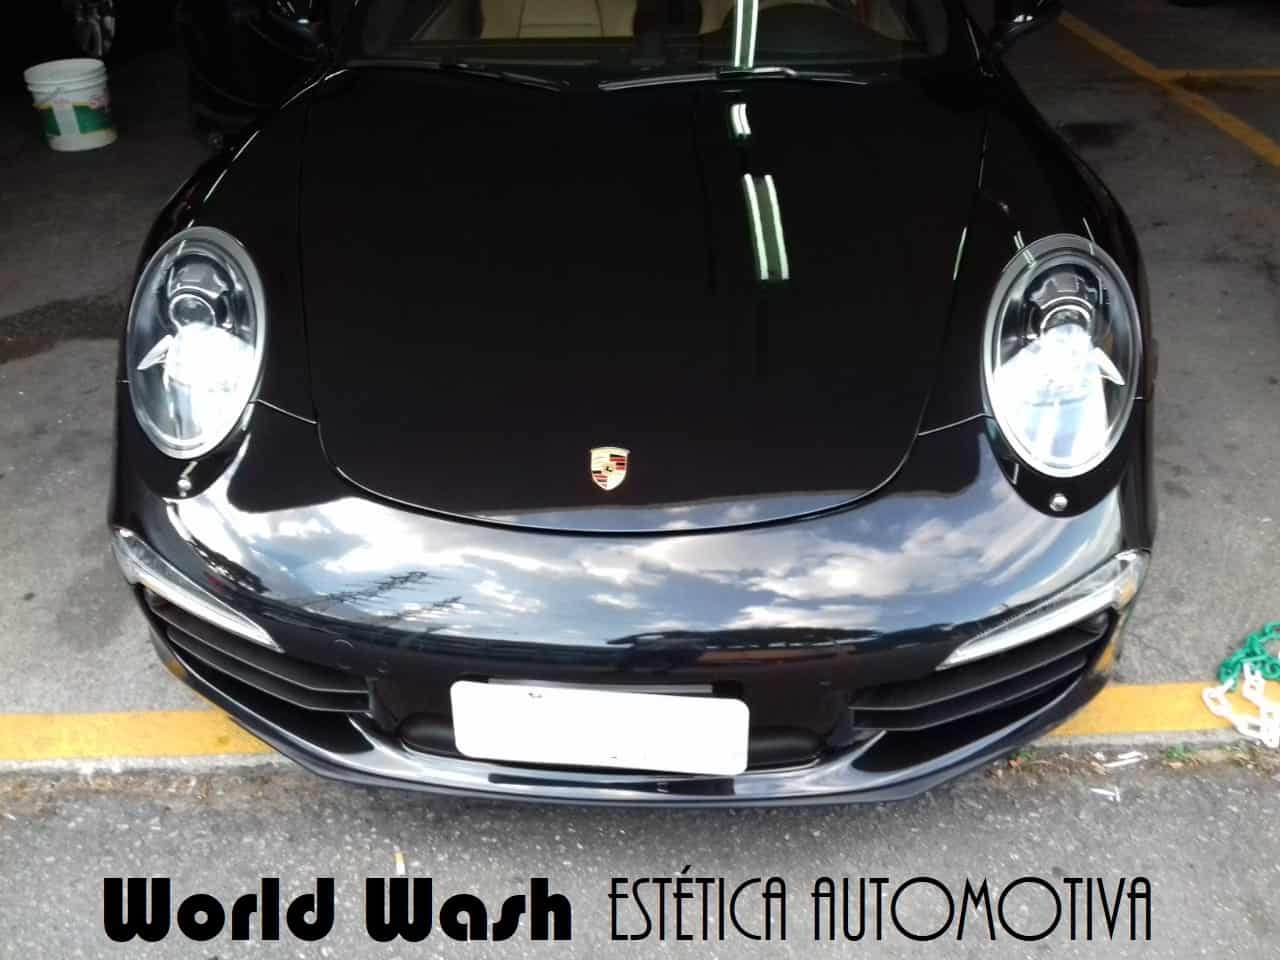 WORLD WASH | Estética Automotiva - Higienização Automotiva